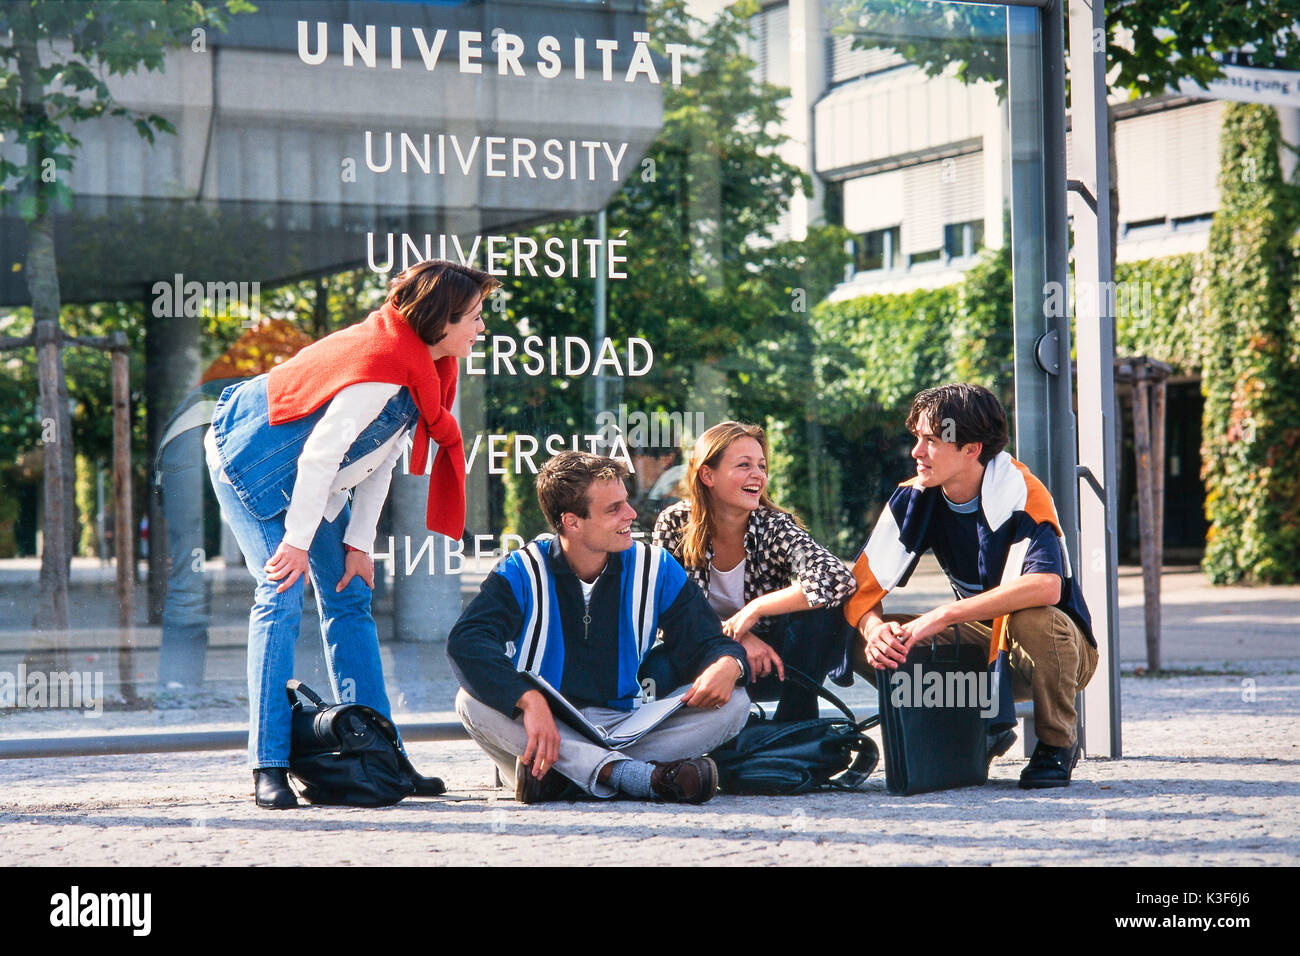 Gruppe von Jugendlichen/Studenten vor der Universität Stockfoto